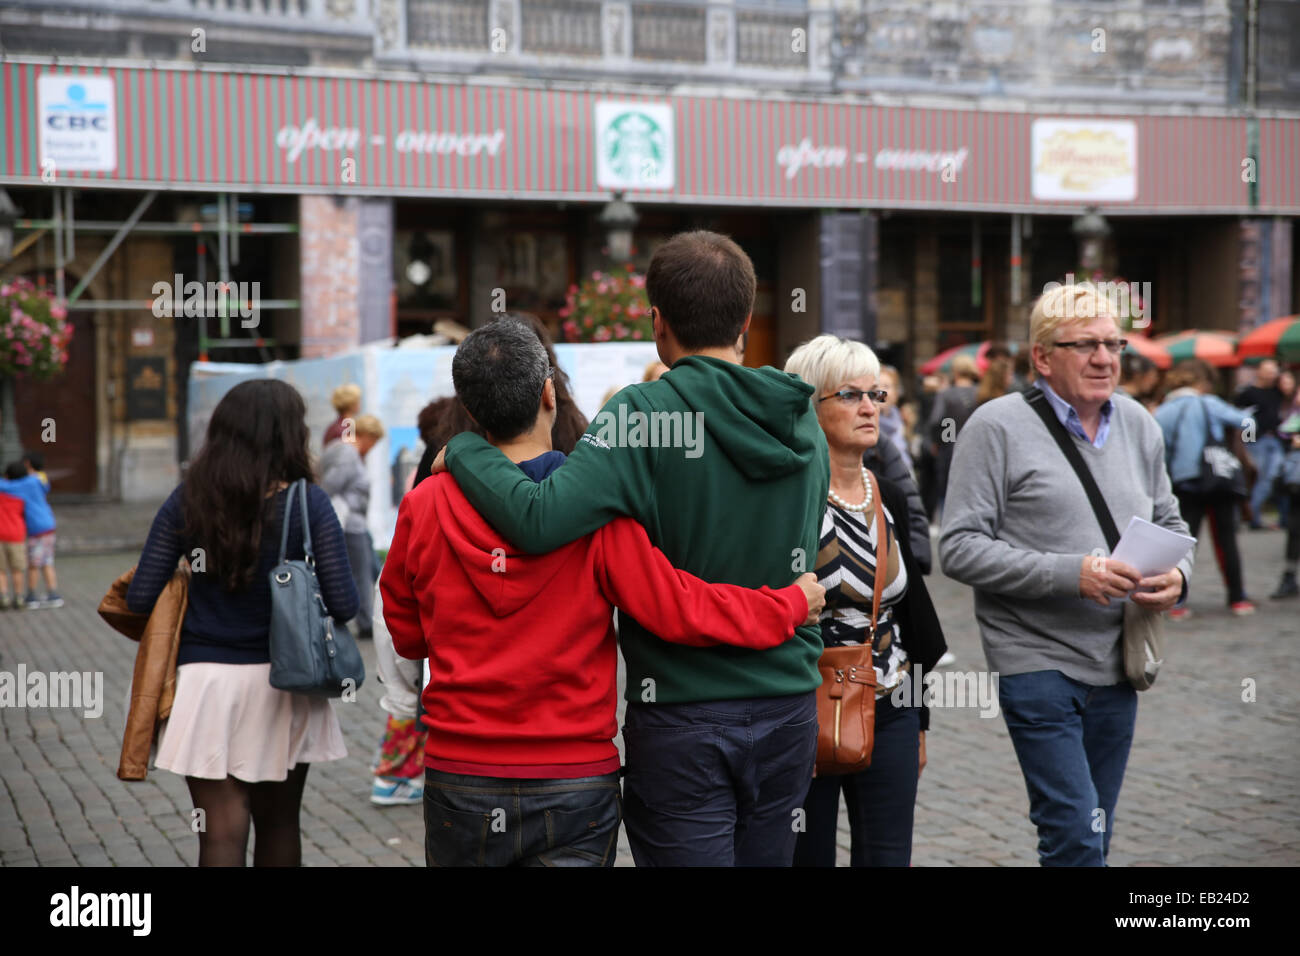 Homme couple gay ouvert rue de plein air europe Banque D'Images